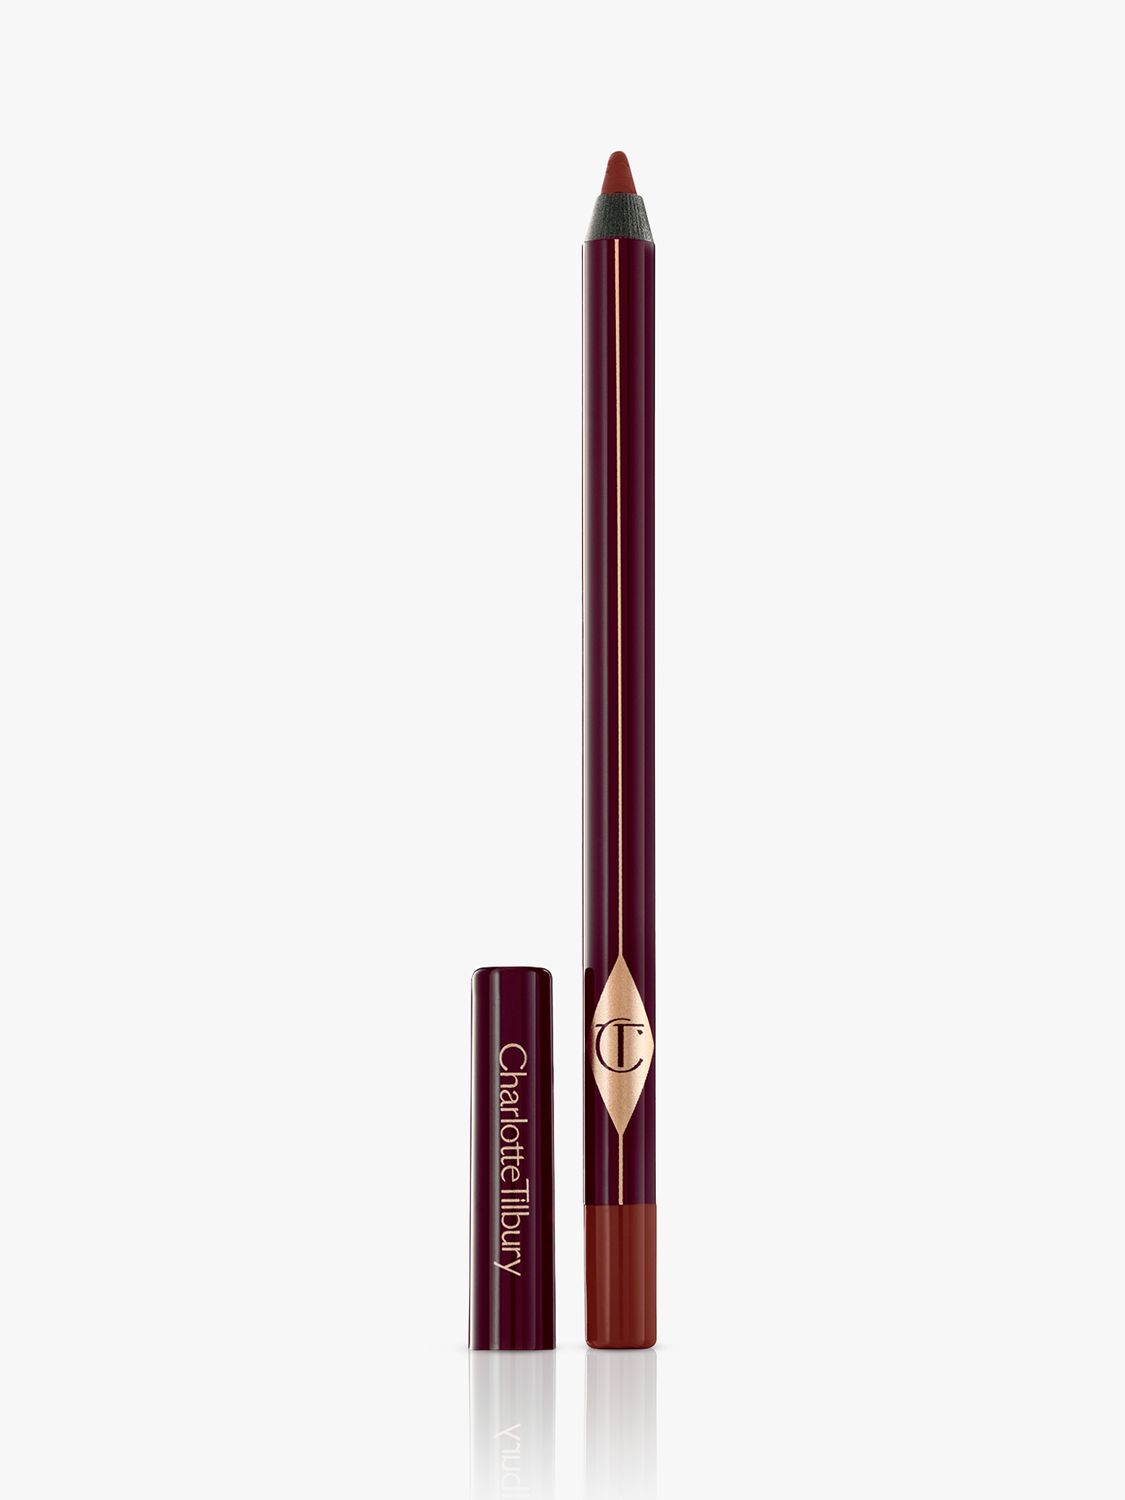 Charlotte Tilbury Eyeliner Pencil, Walk of No Shame 1